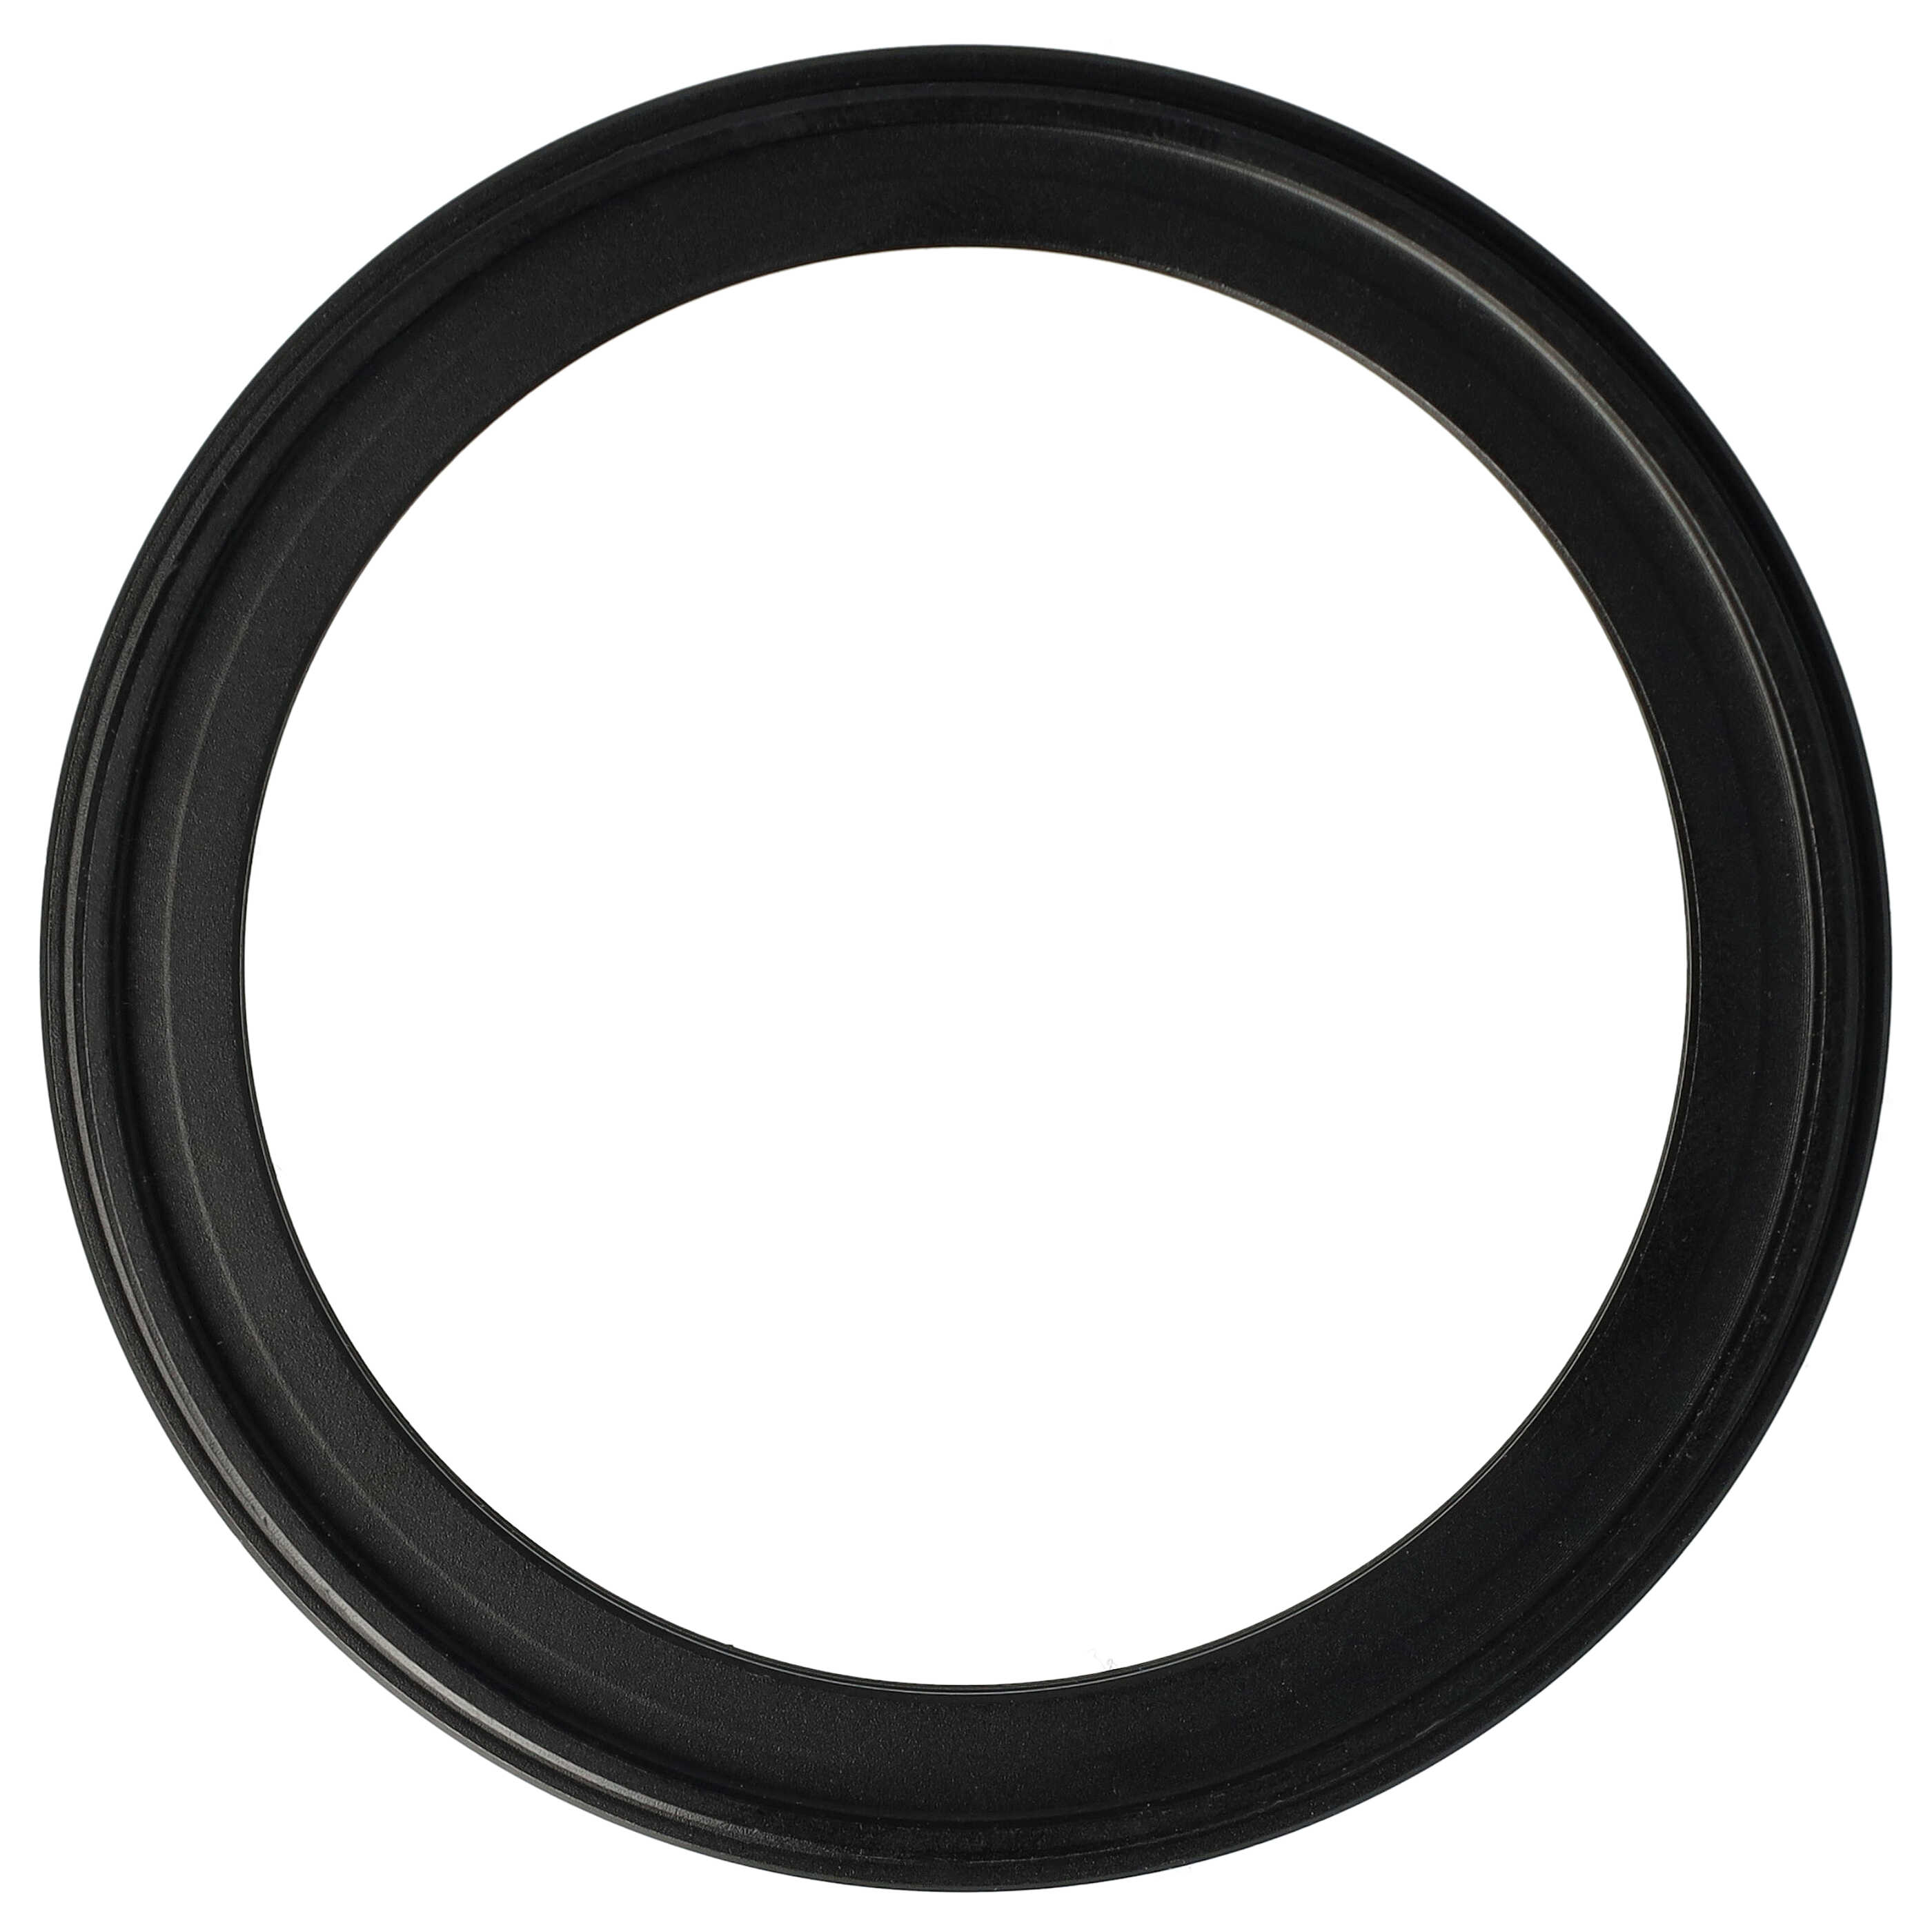 Step-Down-Ring Adapter von 67 mm auf 55 mm passend für Kamera Objektiv - Filteradapter, Metall, schwarz